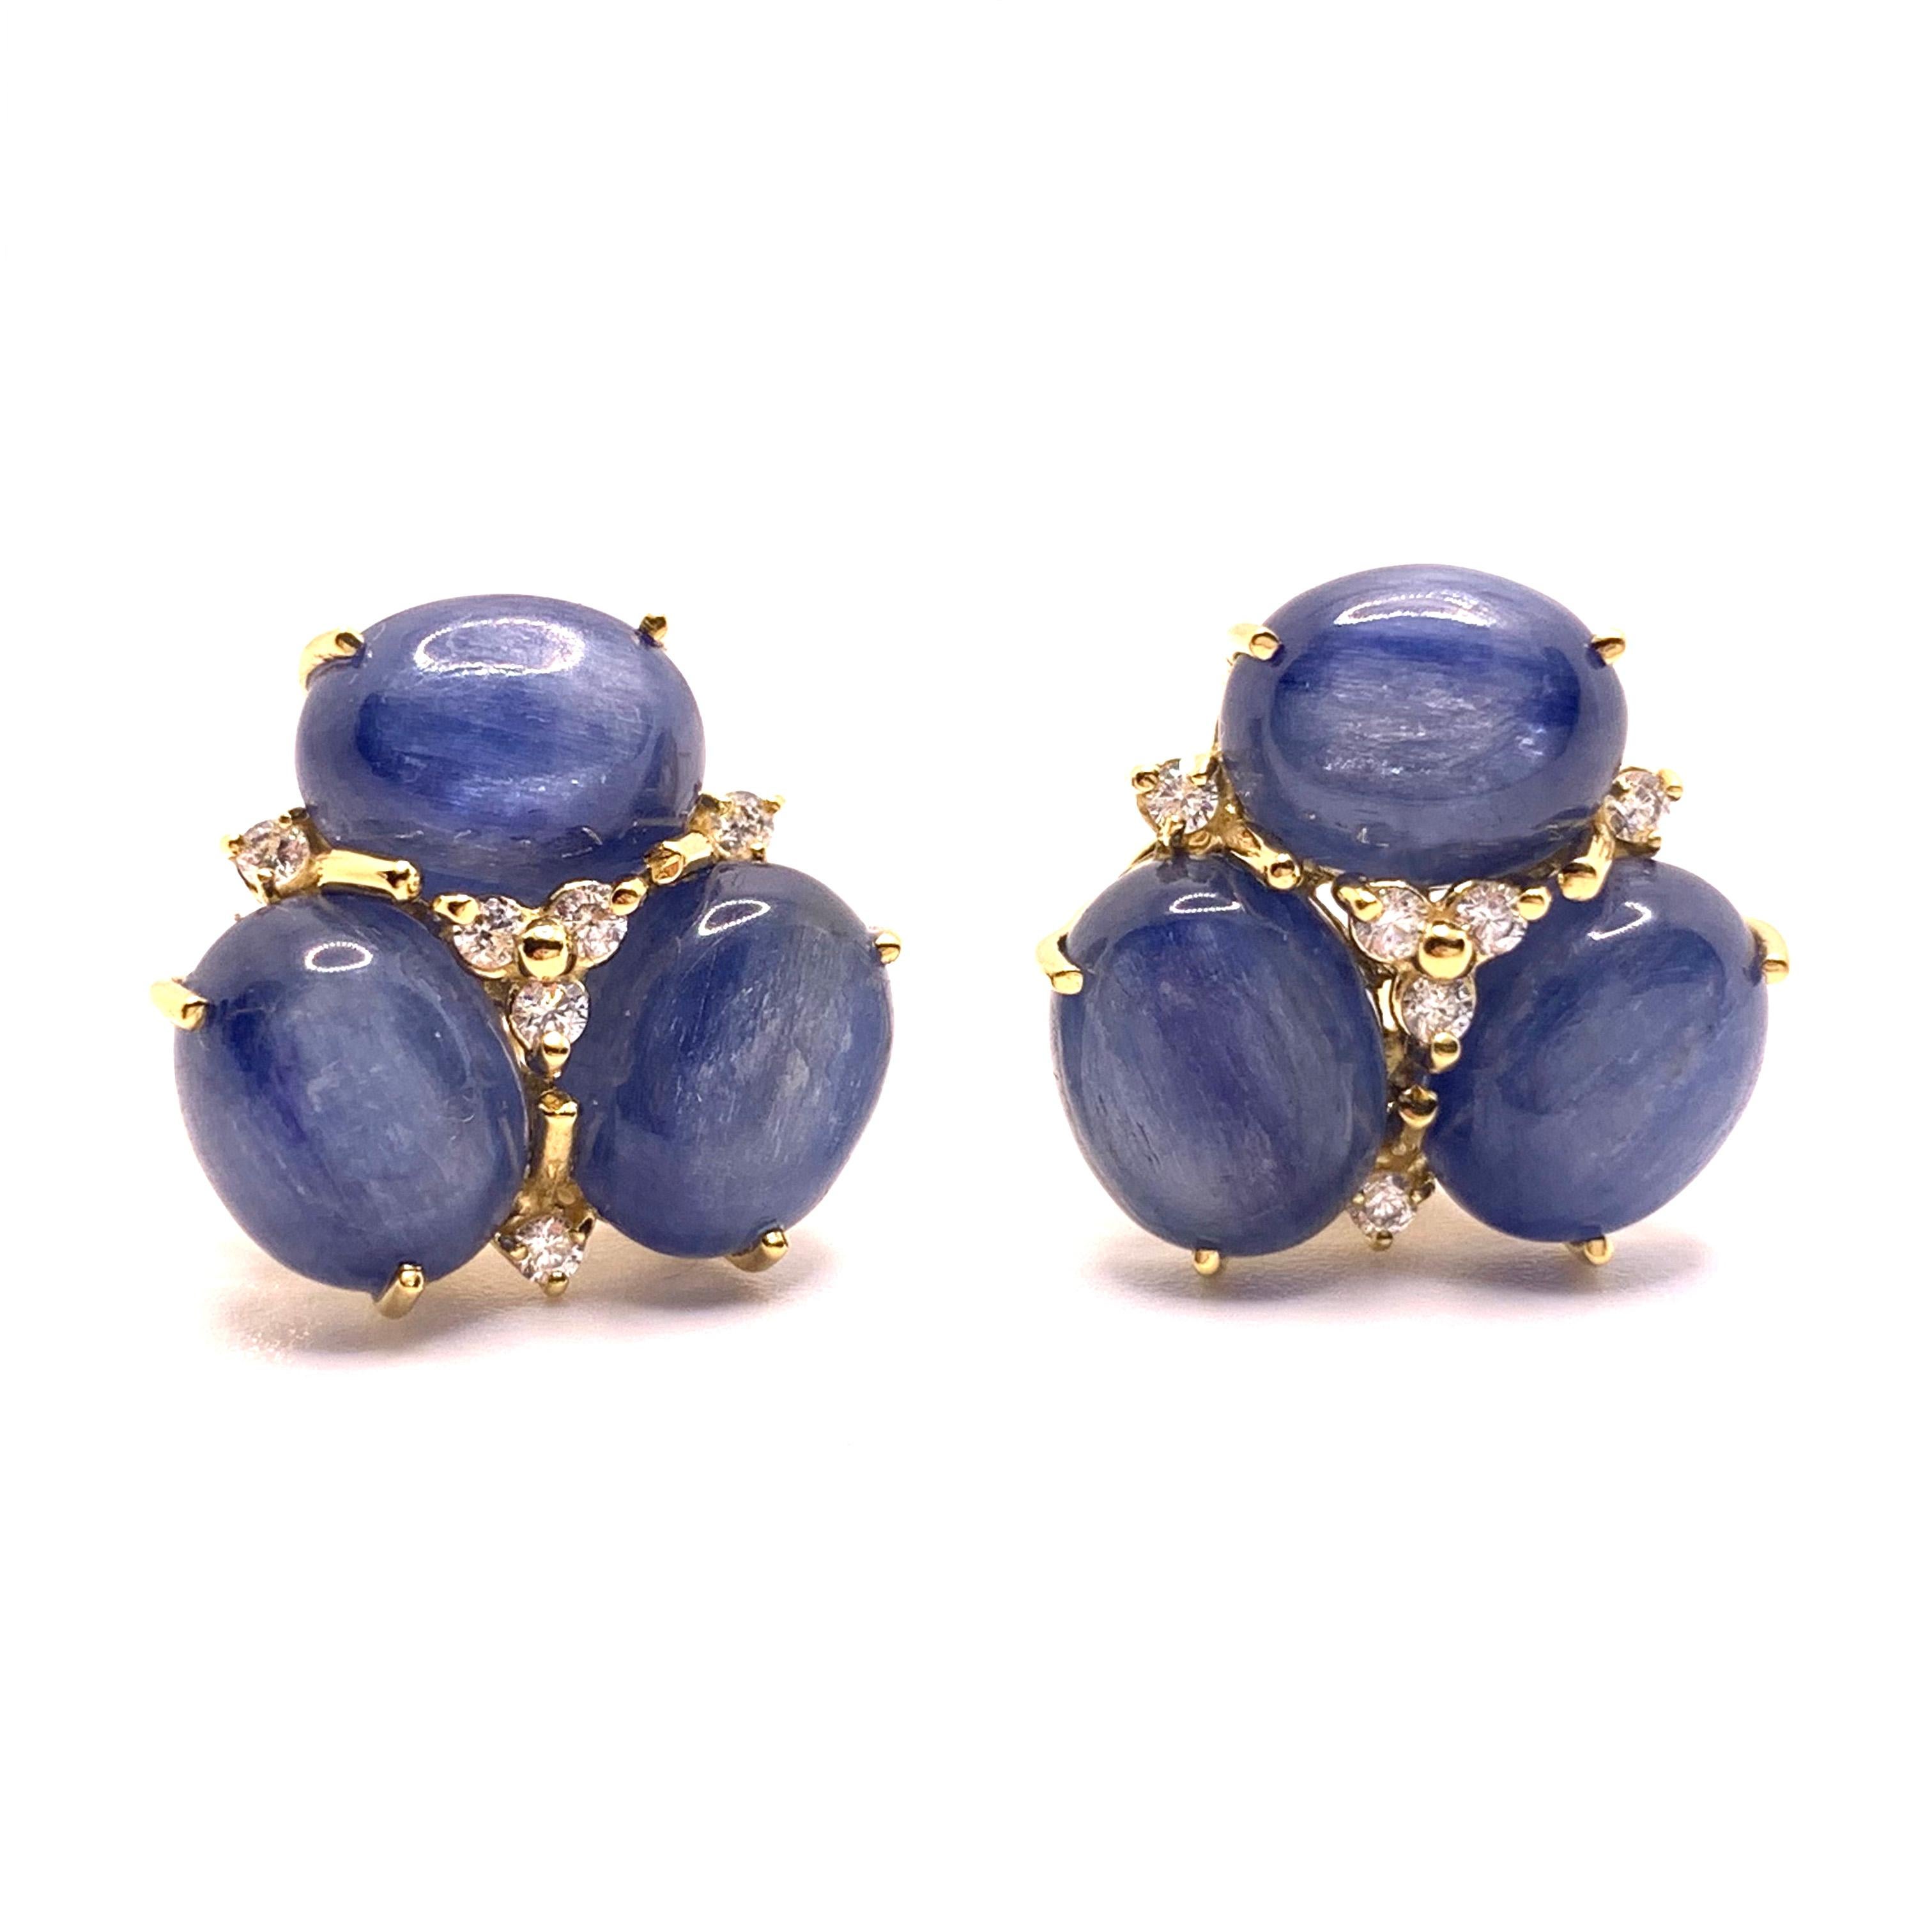 Dieses atemberaubende Paar Ohrringe besteht aus einem ovalen blauen Kyanit im Cabochon-Schliff, der mit einem runden simulierten Diamanten verziert ist. Die Ohrringe sind in 18 Karat Gelbgold Vermeil über Sterlingsilber gefasst. Die ovalen